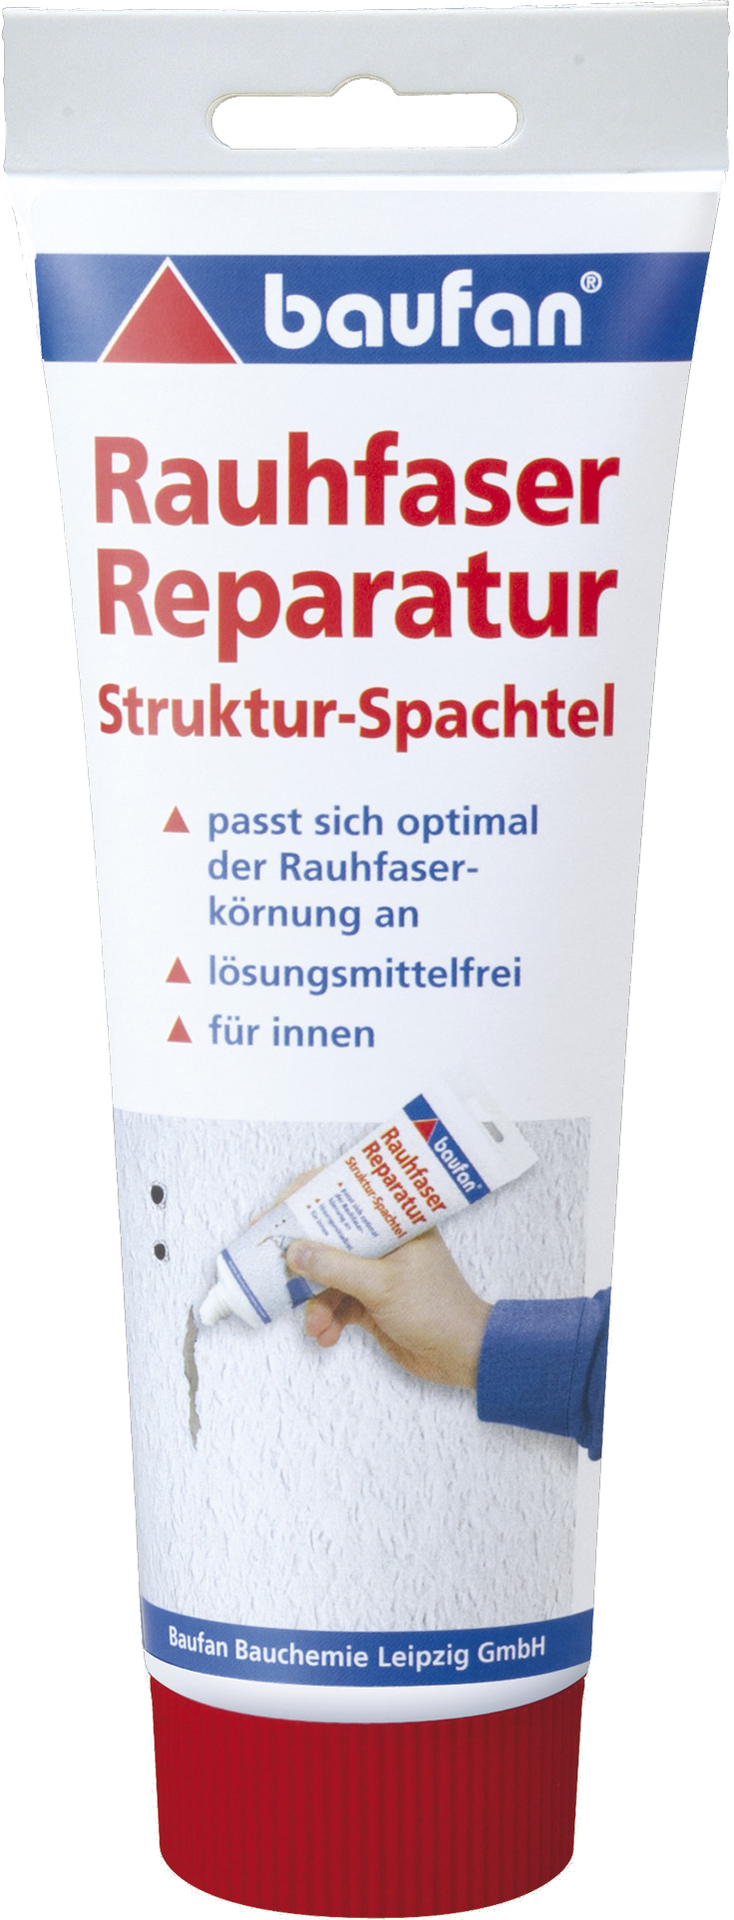 Baufan Rauhfaser-Reparatur-Spachtel 330 g